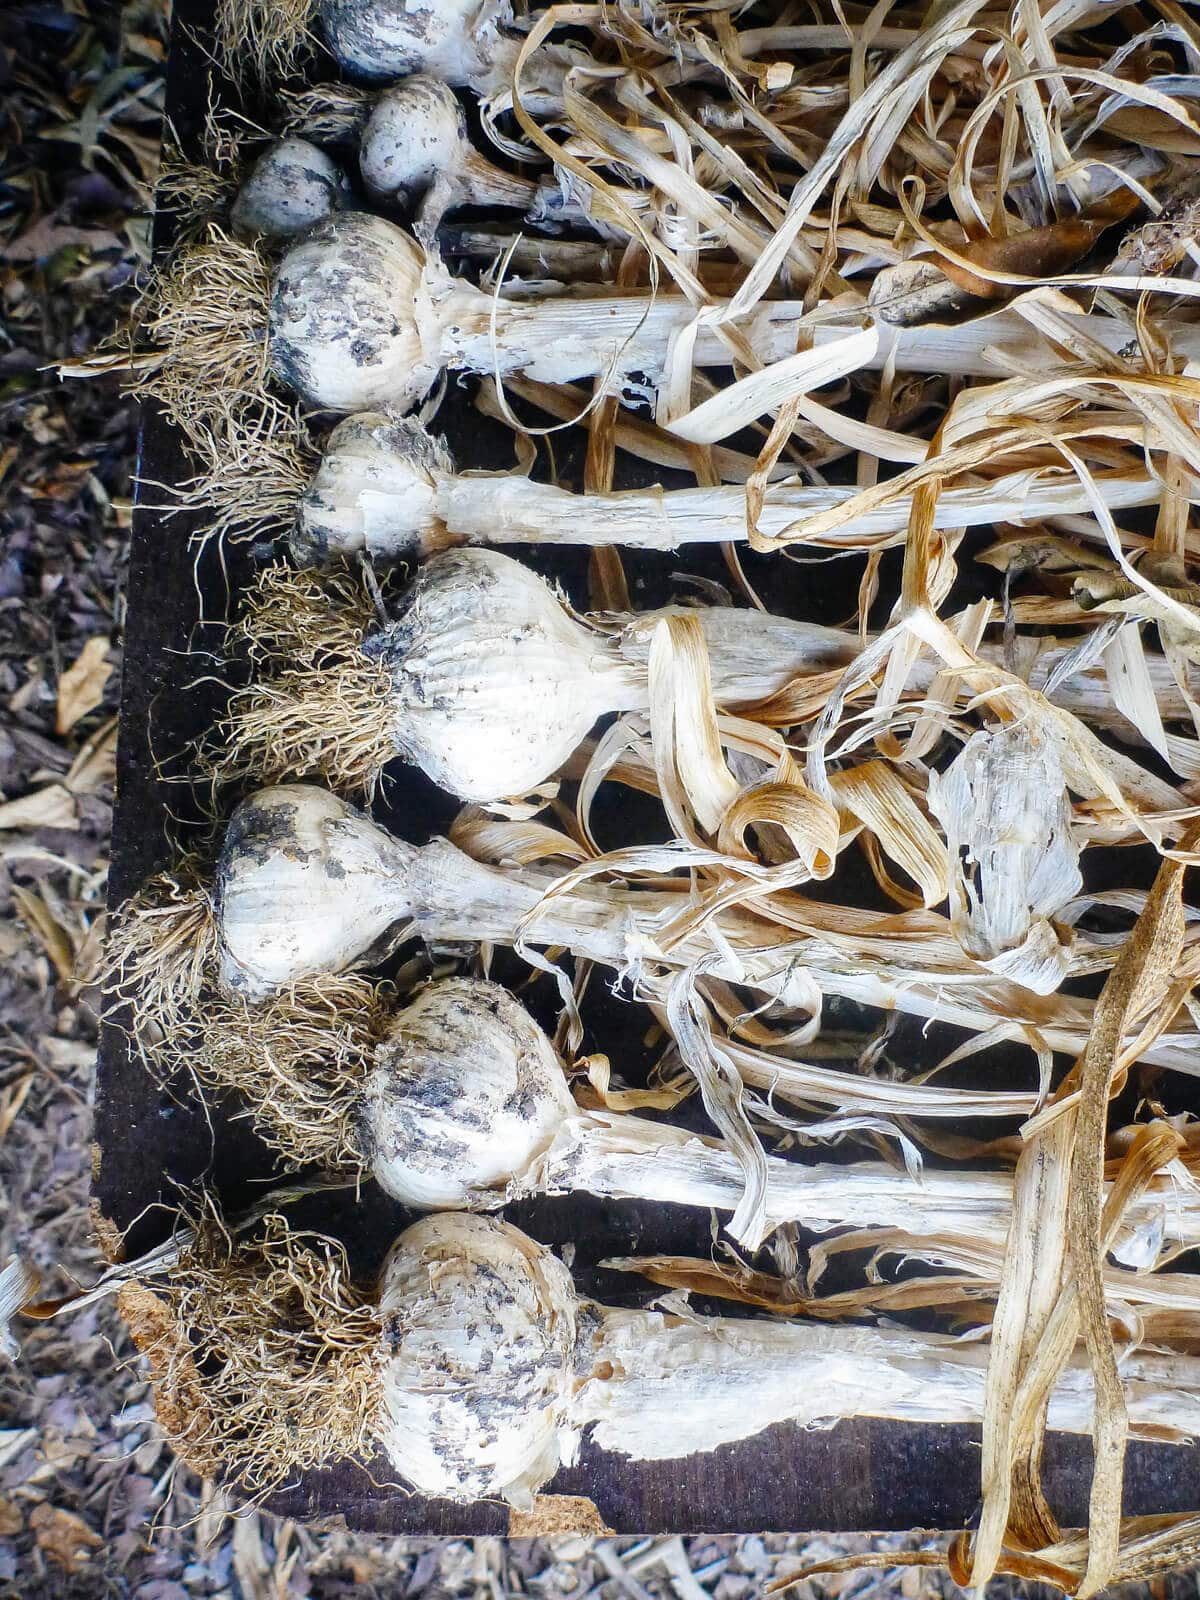 Garlic harvest being dried in preparation for storage